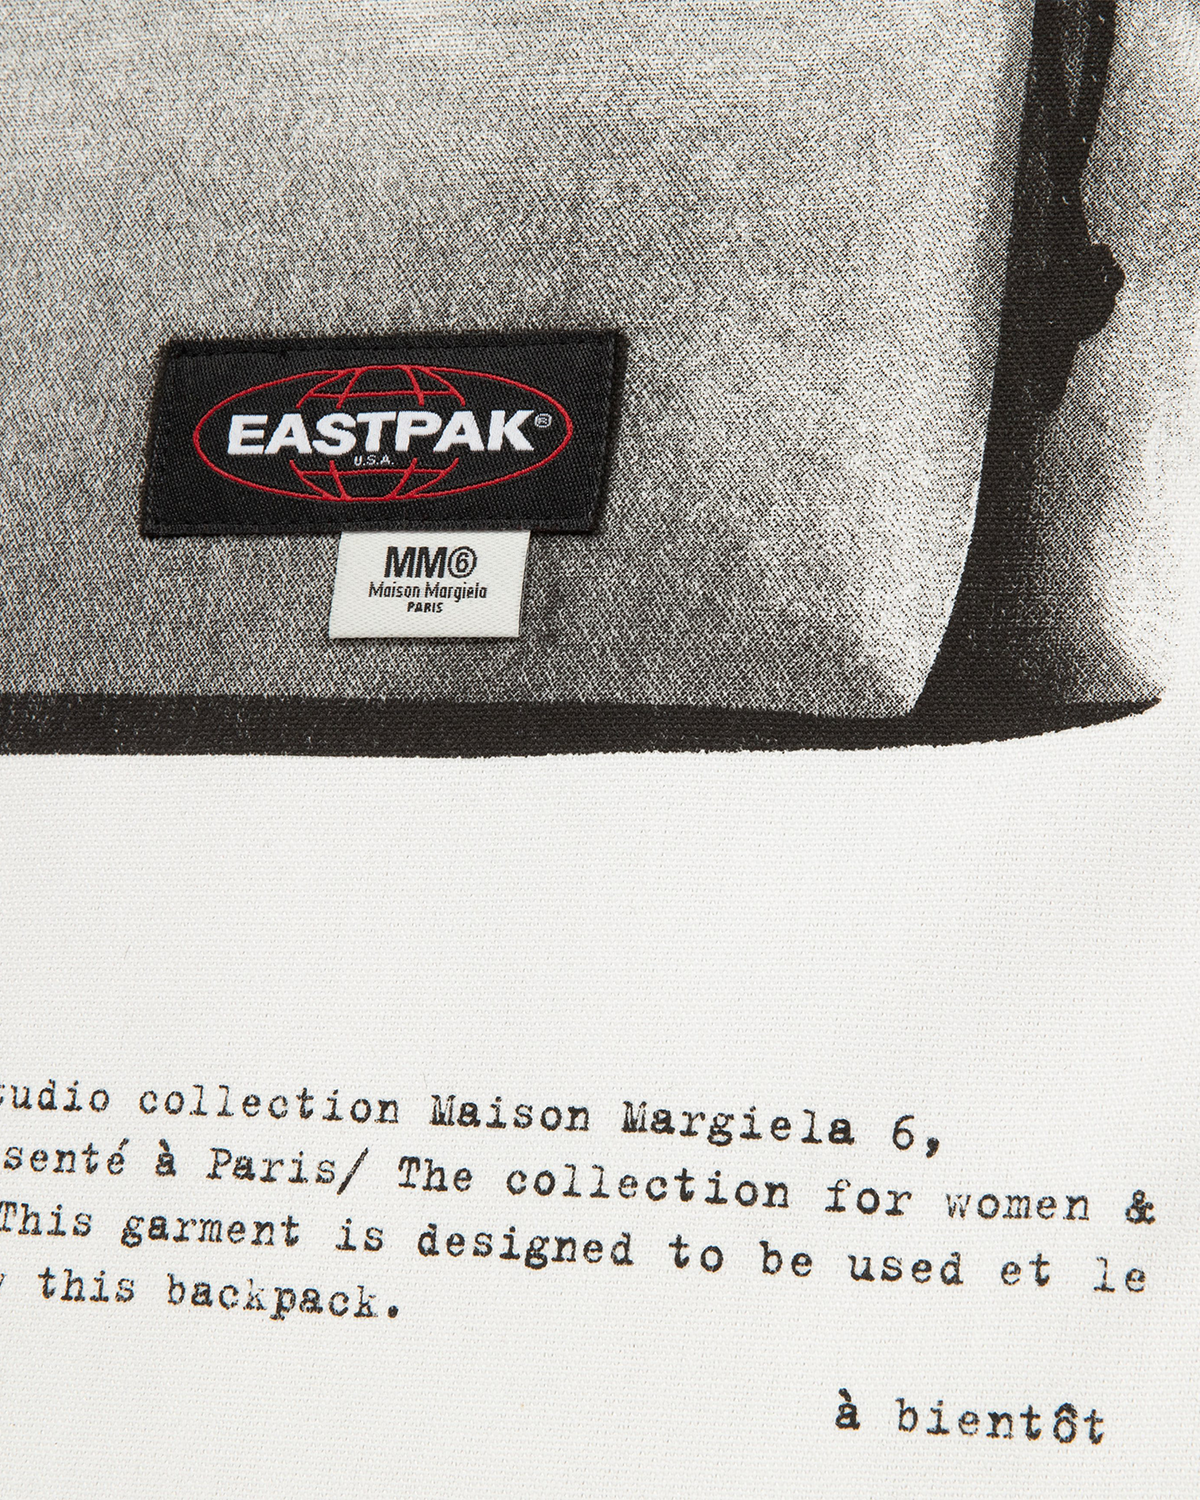 Eastpak x MM6 Poster Bag